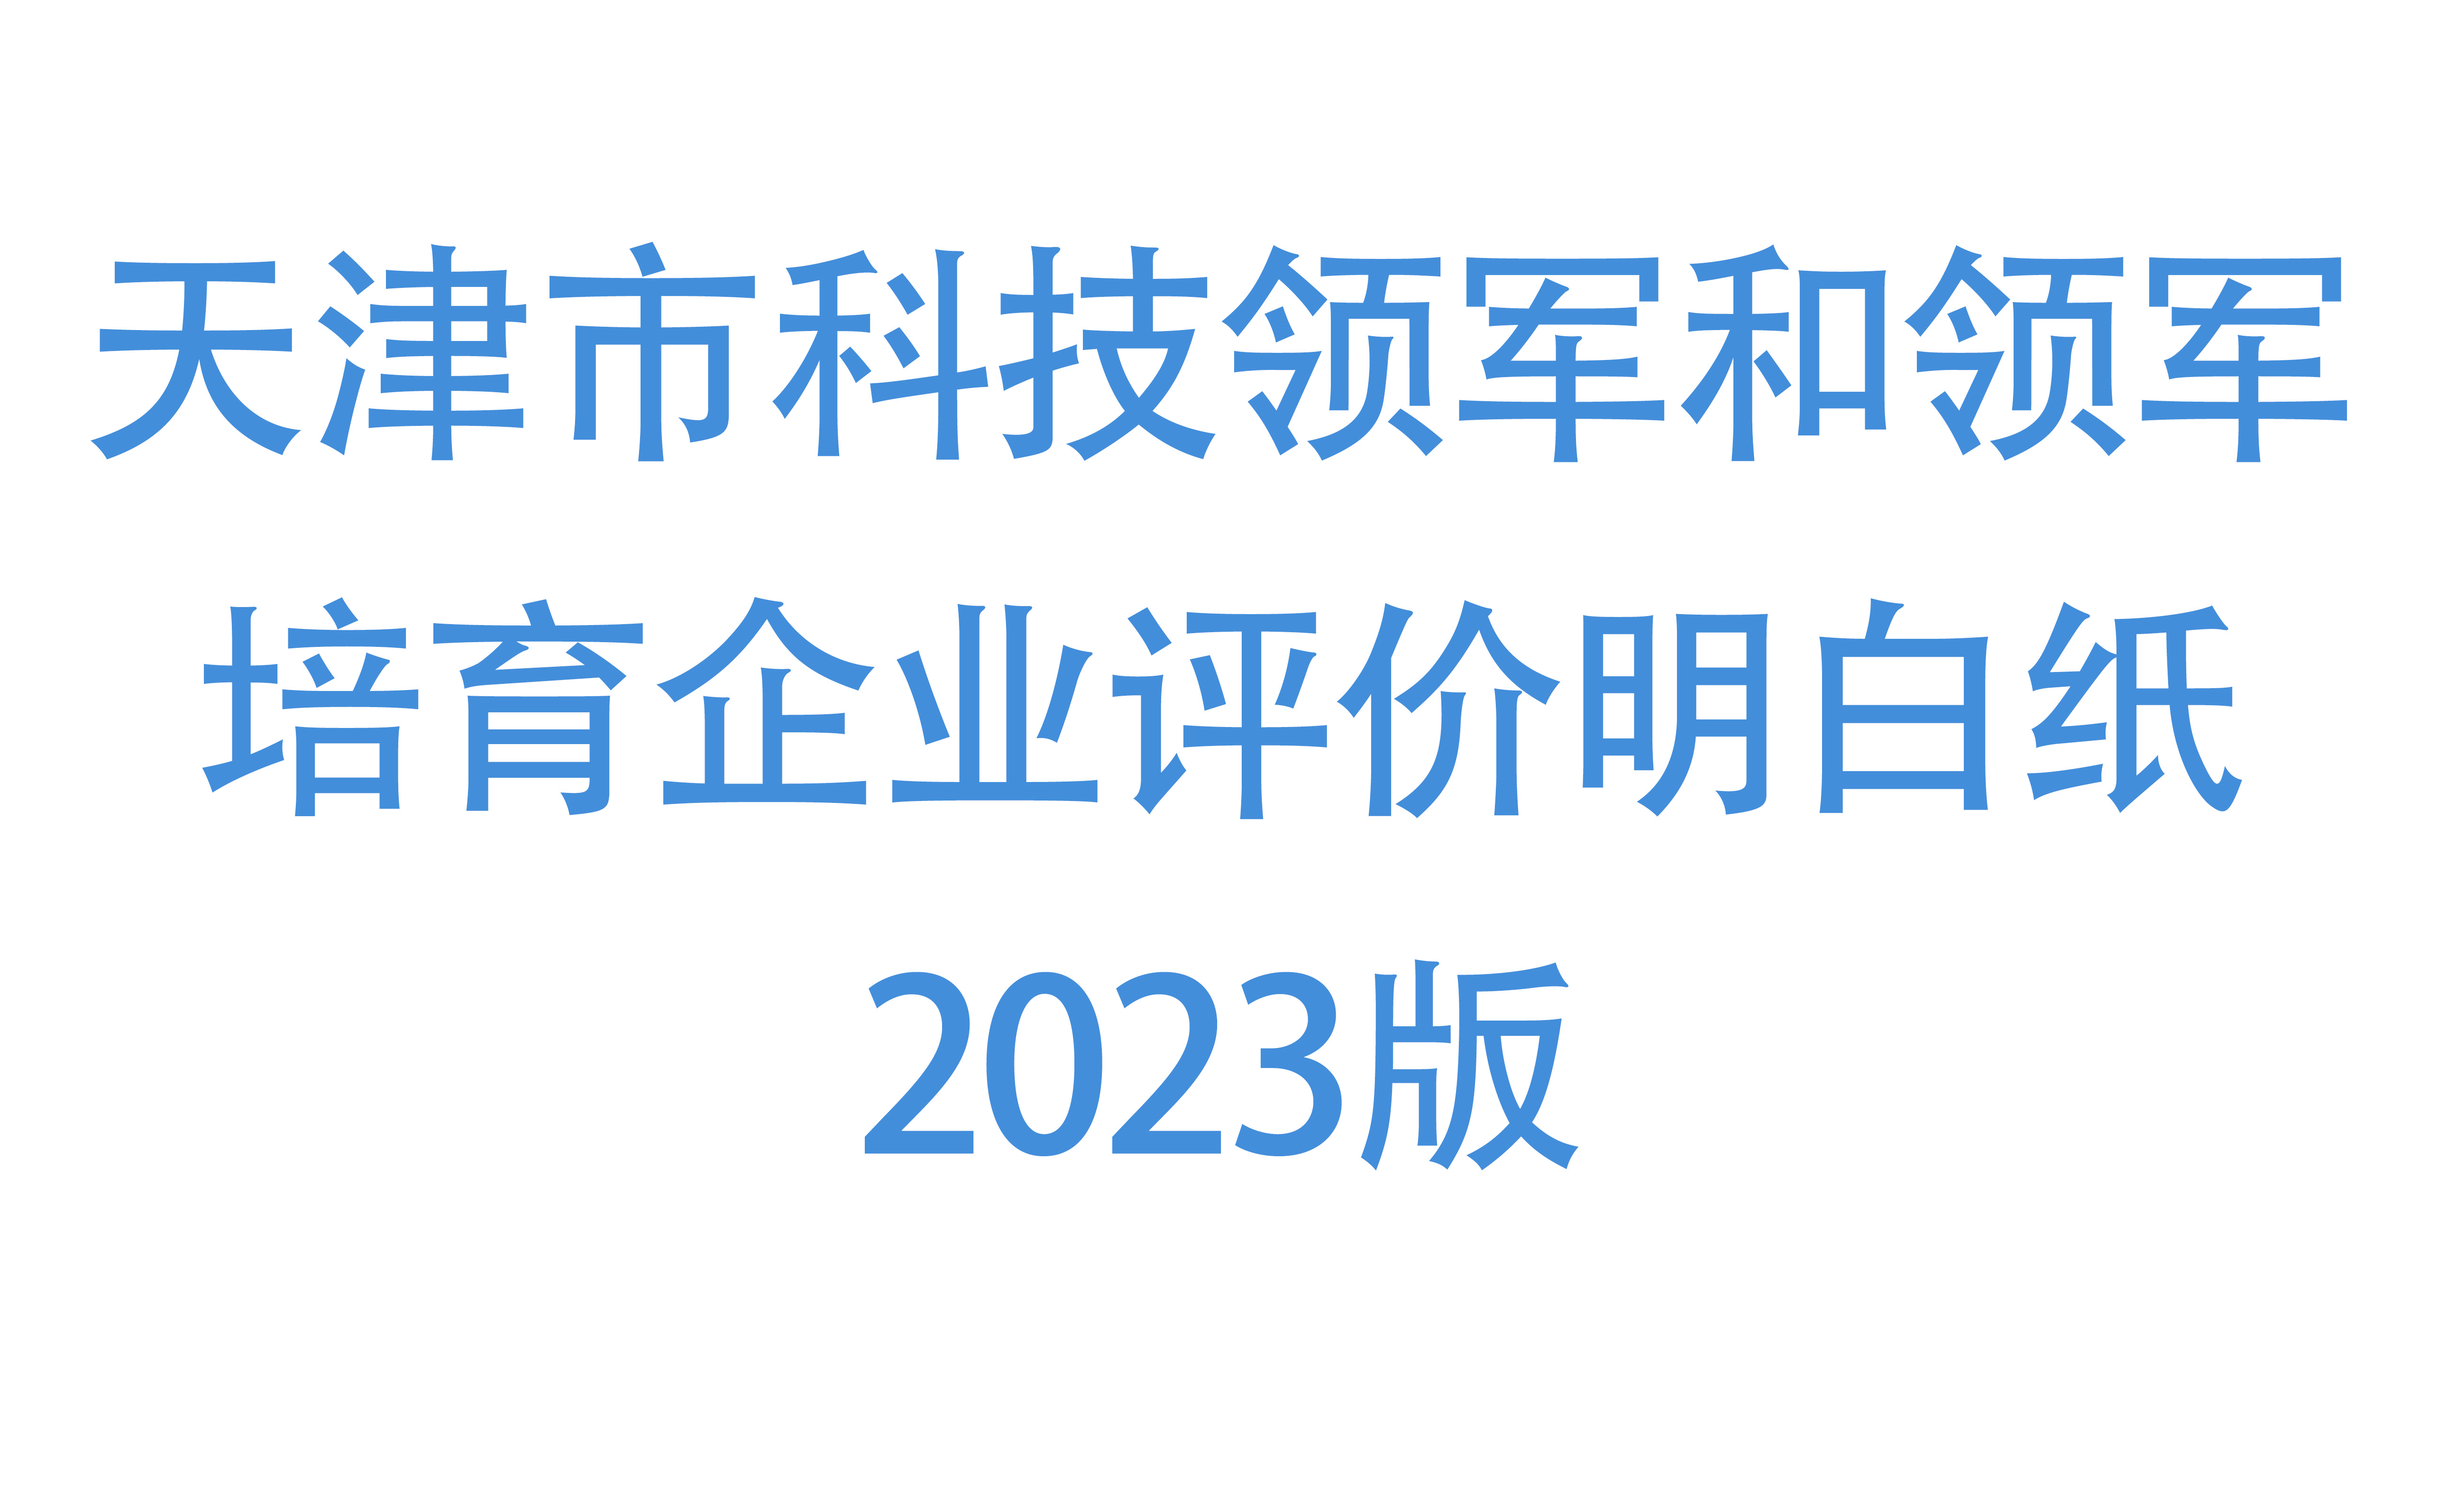 天津市科技领军和领军培育企业评价明白纸2023版